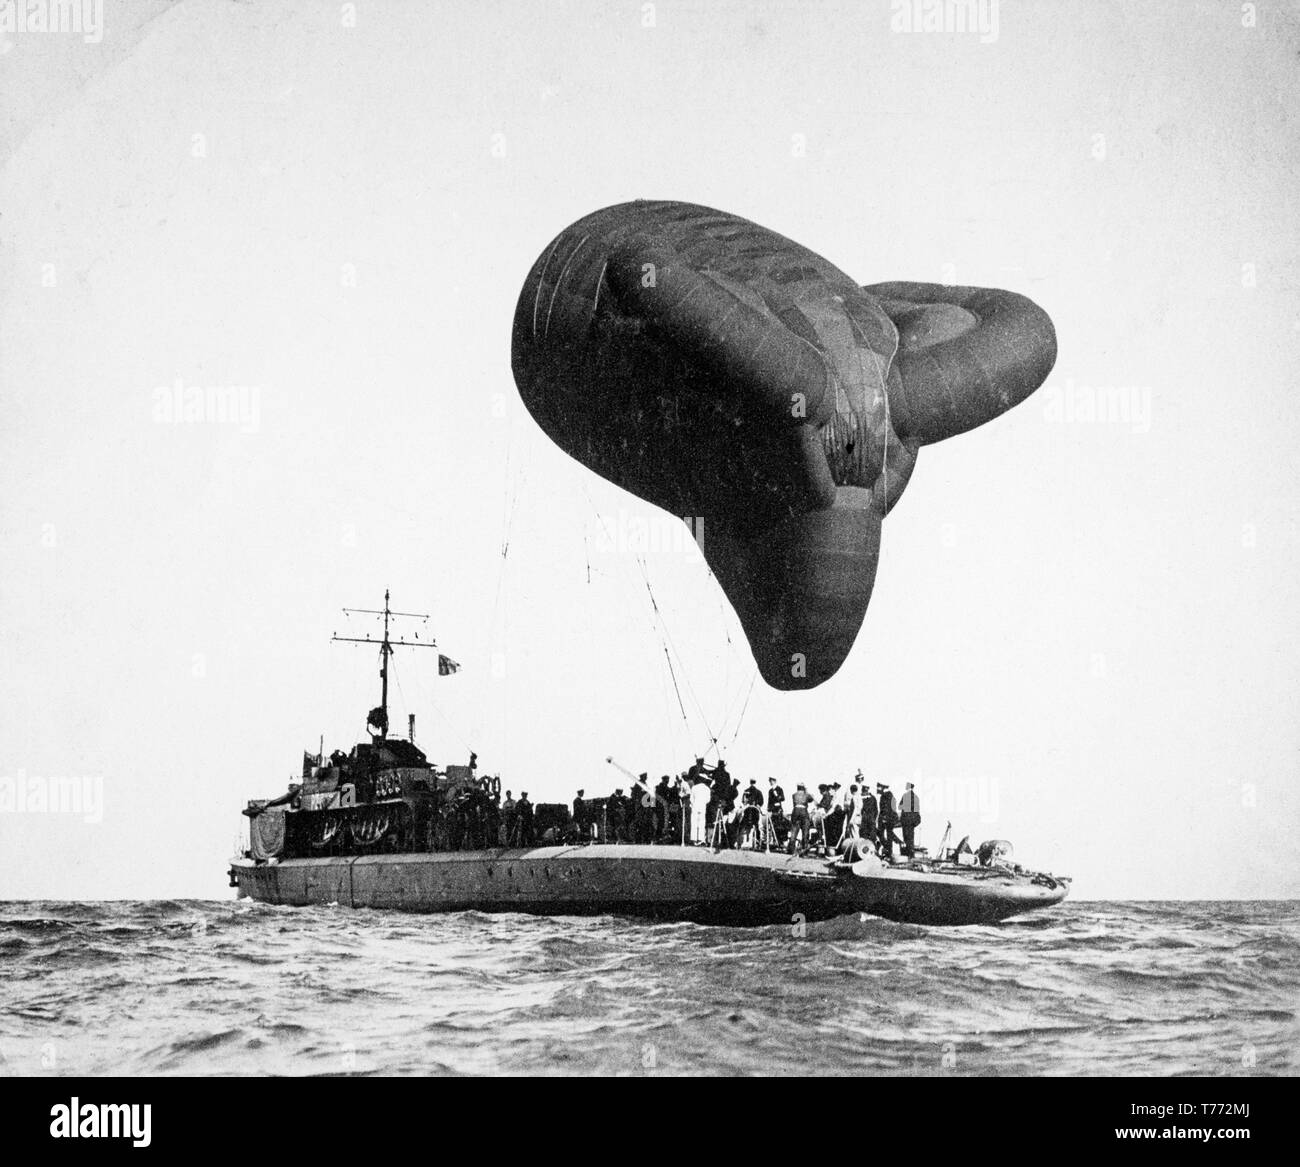 Ein erster Weltkrieg schwarz-weiß Foto zeigt einen Schwall kite Ballon über ein britisches Schiff geflogen werden. Diese Ballons wurden oft über Schiffe im Konvoi geflogen, Angriff von tief fliegenden feindliche Flugzeuge zu vermeiden. Stockfoto